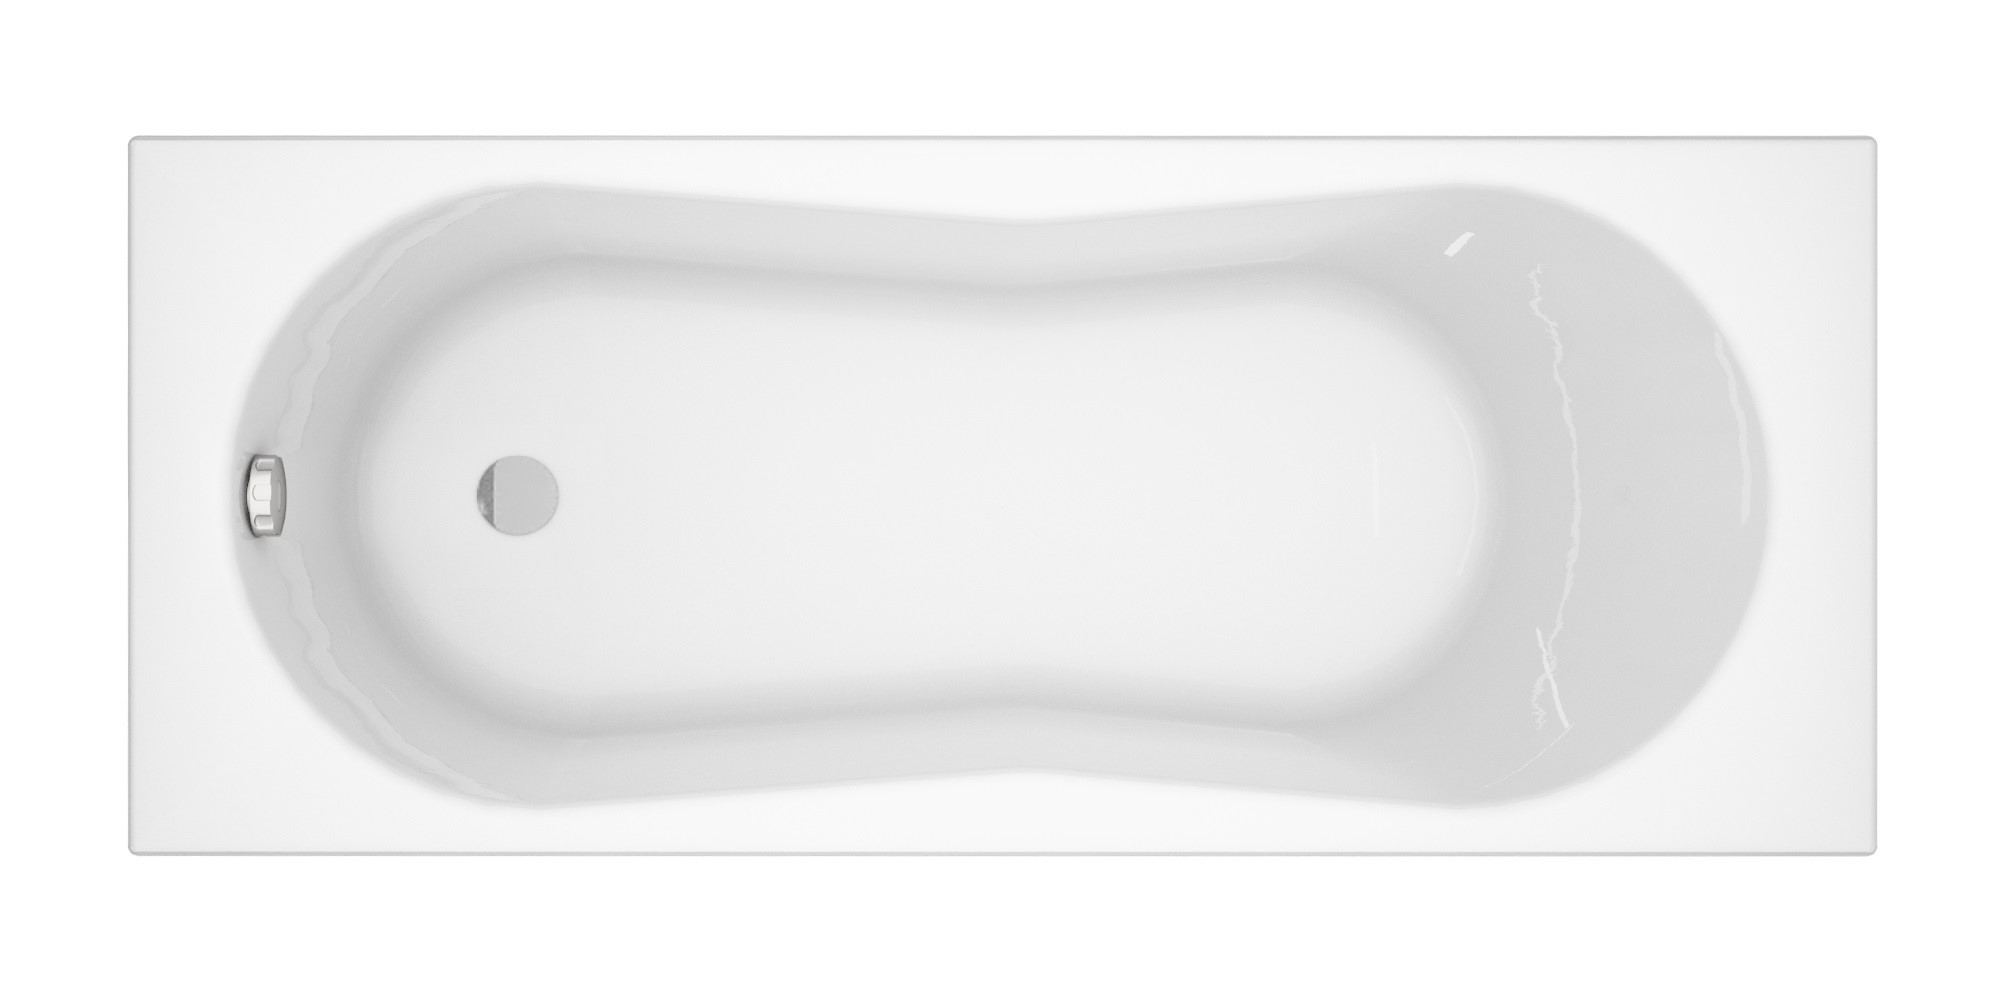 Ванна прямоугольная Cersanit NIKE 170x70